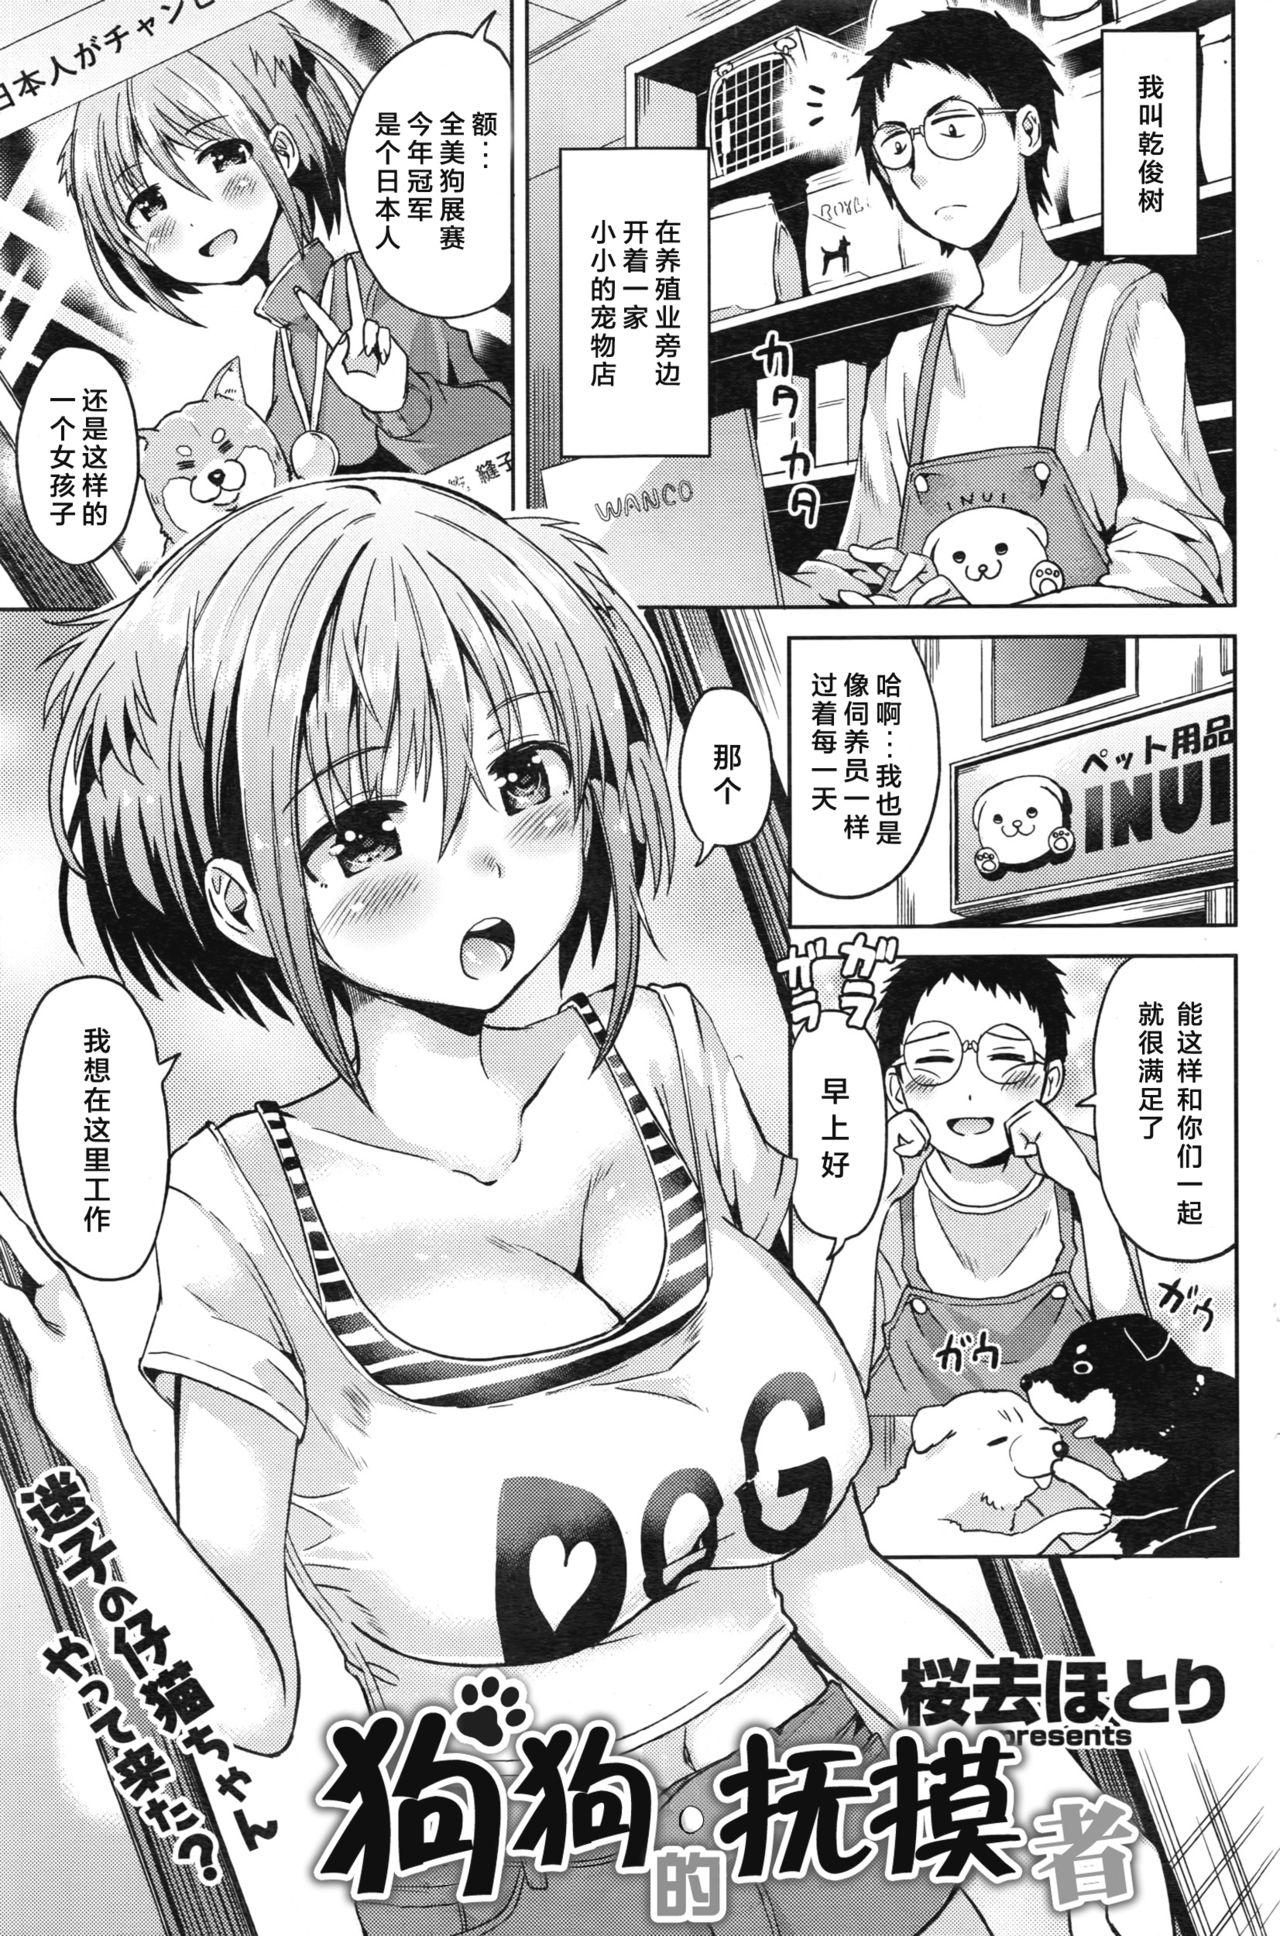 Price Inu no o sawari-san Sensual - Page 2